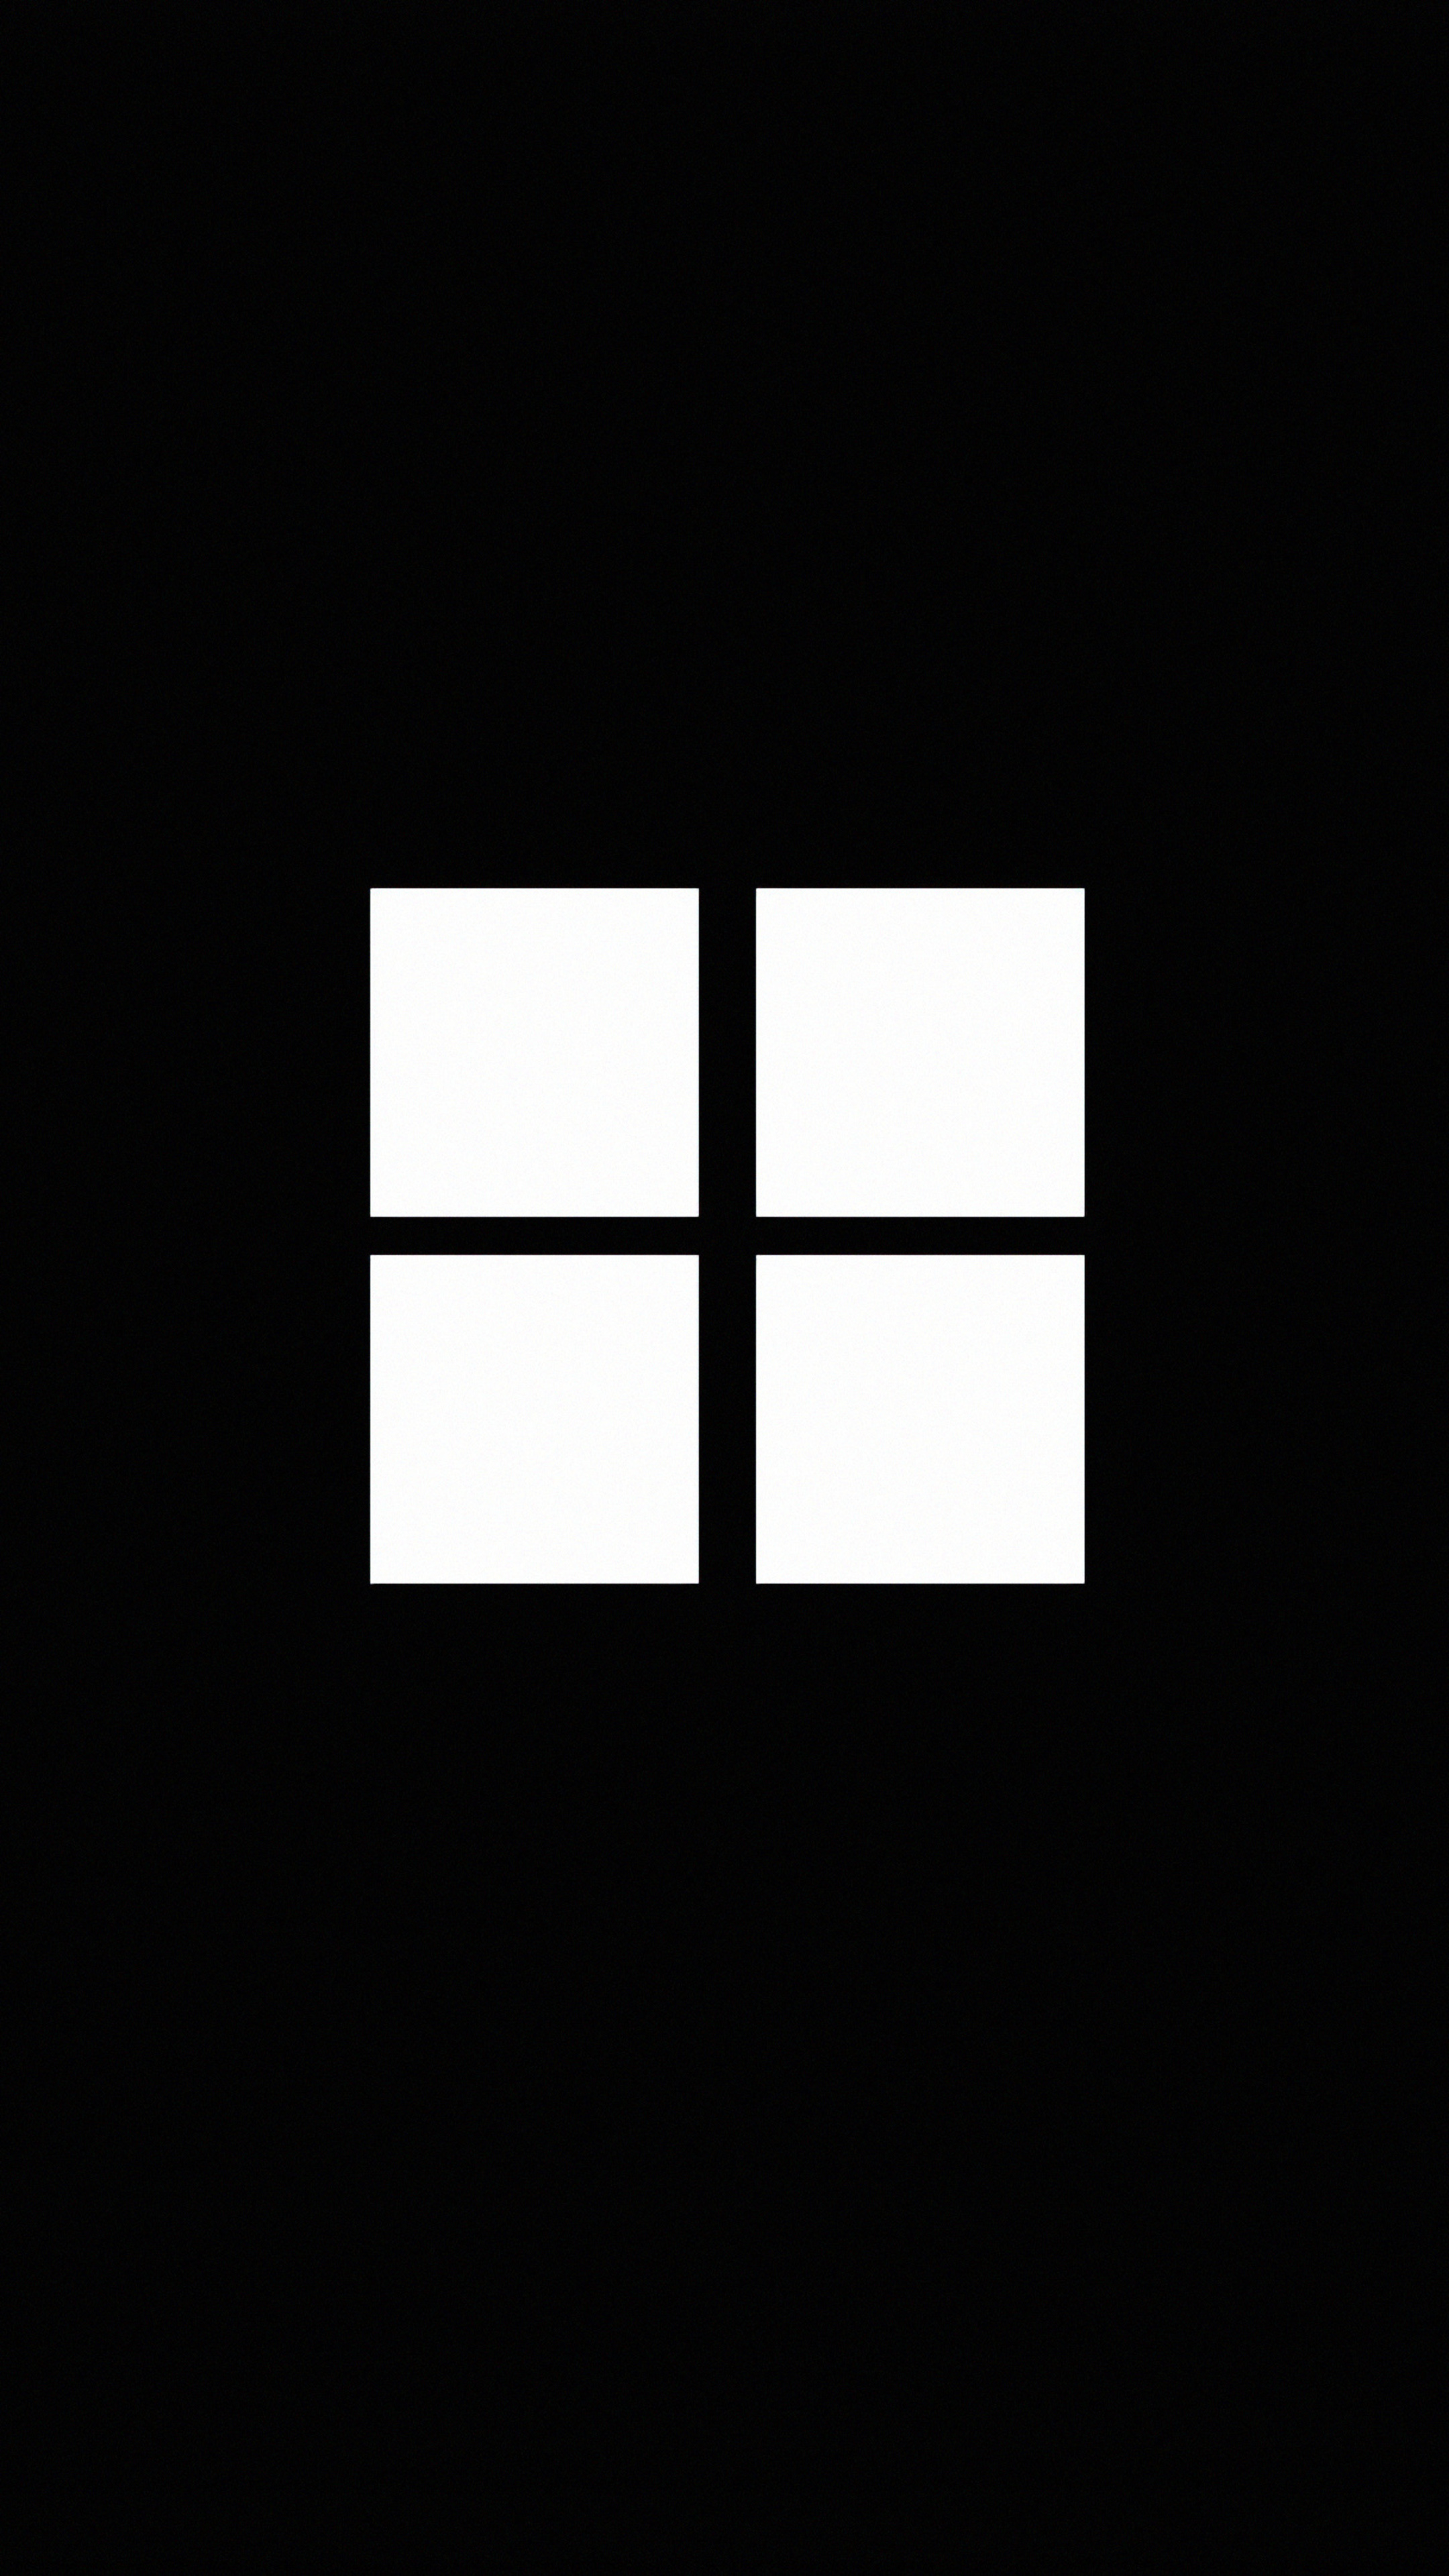 2160x3840 Minimalistic Windows Logo Black 4k Sony Xperia X,XZ,Z5 ...